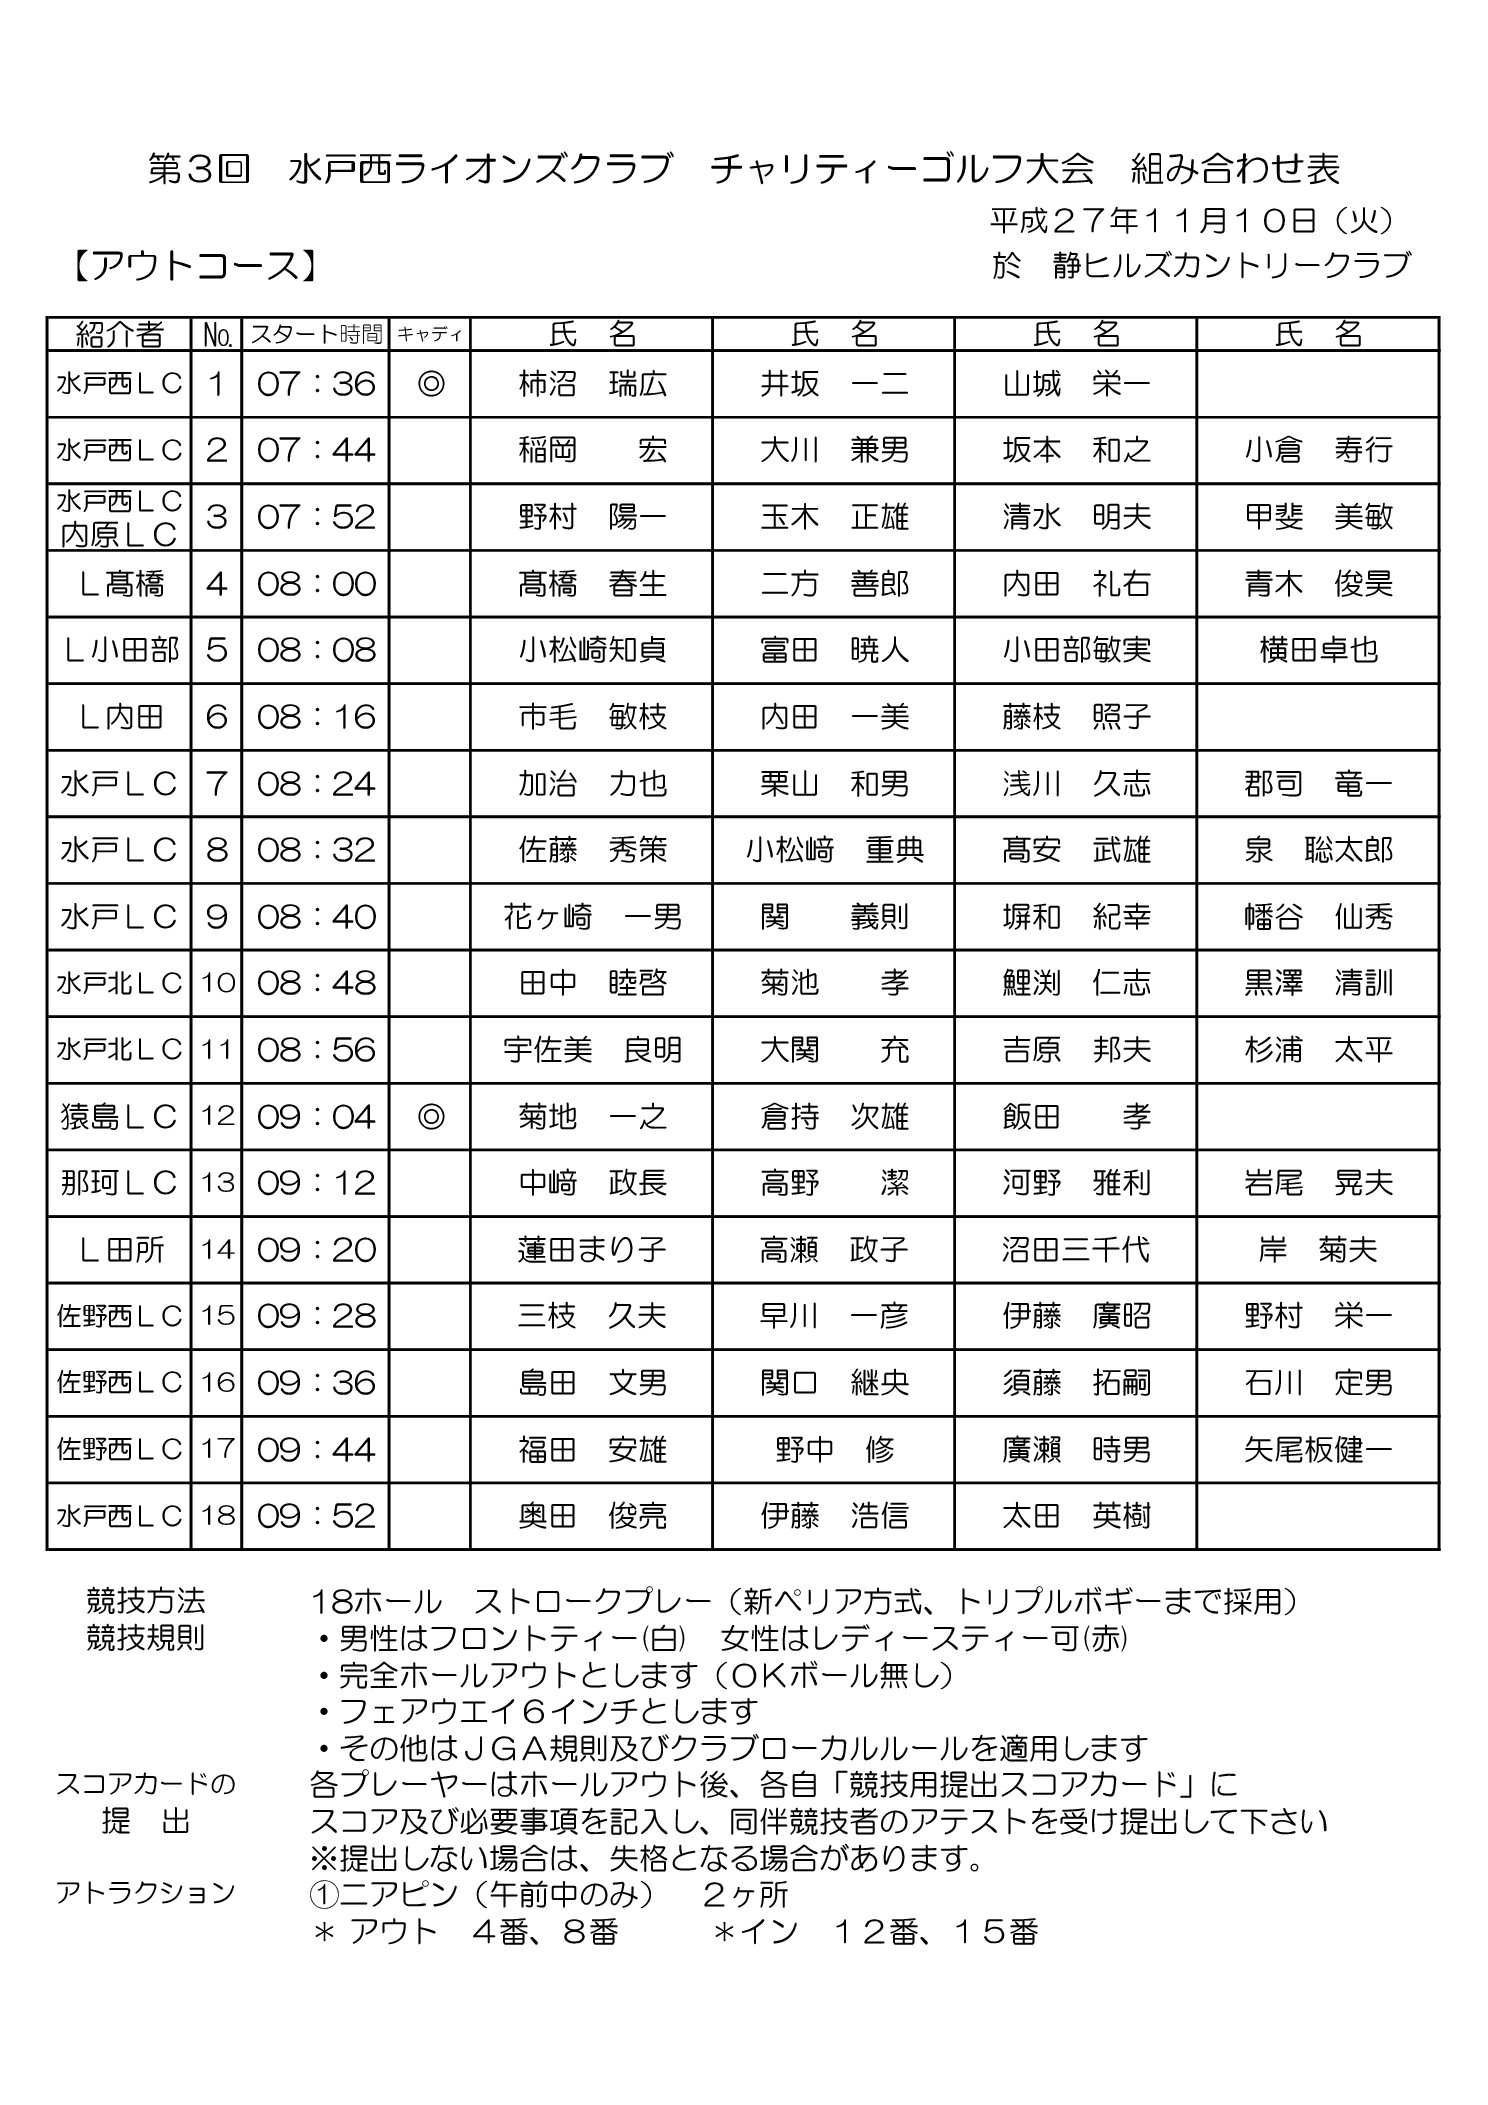 第3回水戸西ライオンズクラブチャリティーゴルフ大会組み合わせ表 Mitonishi Lions Club Report